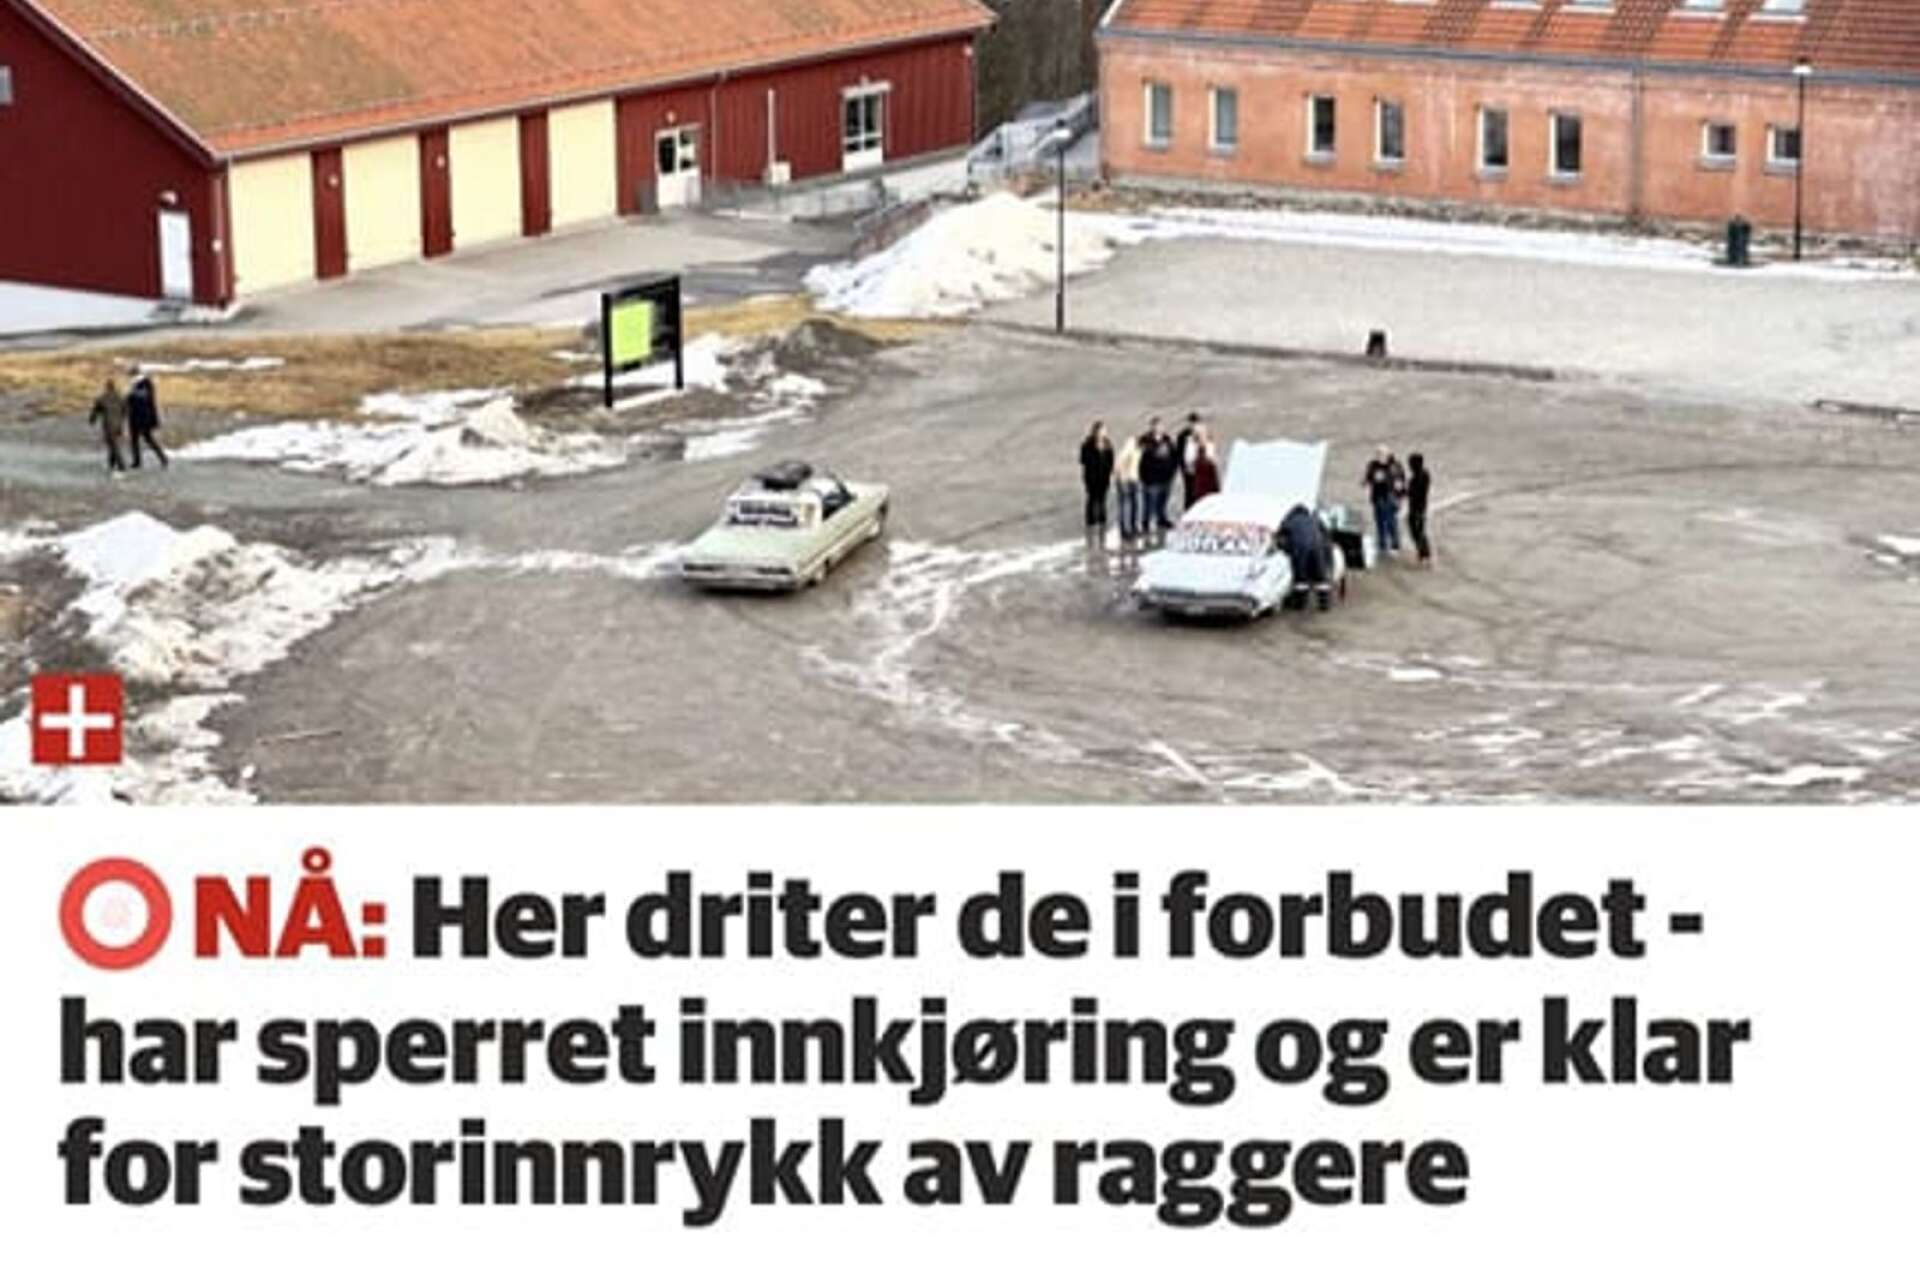 Rubriken och bilden i norska Glåmdalen.